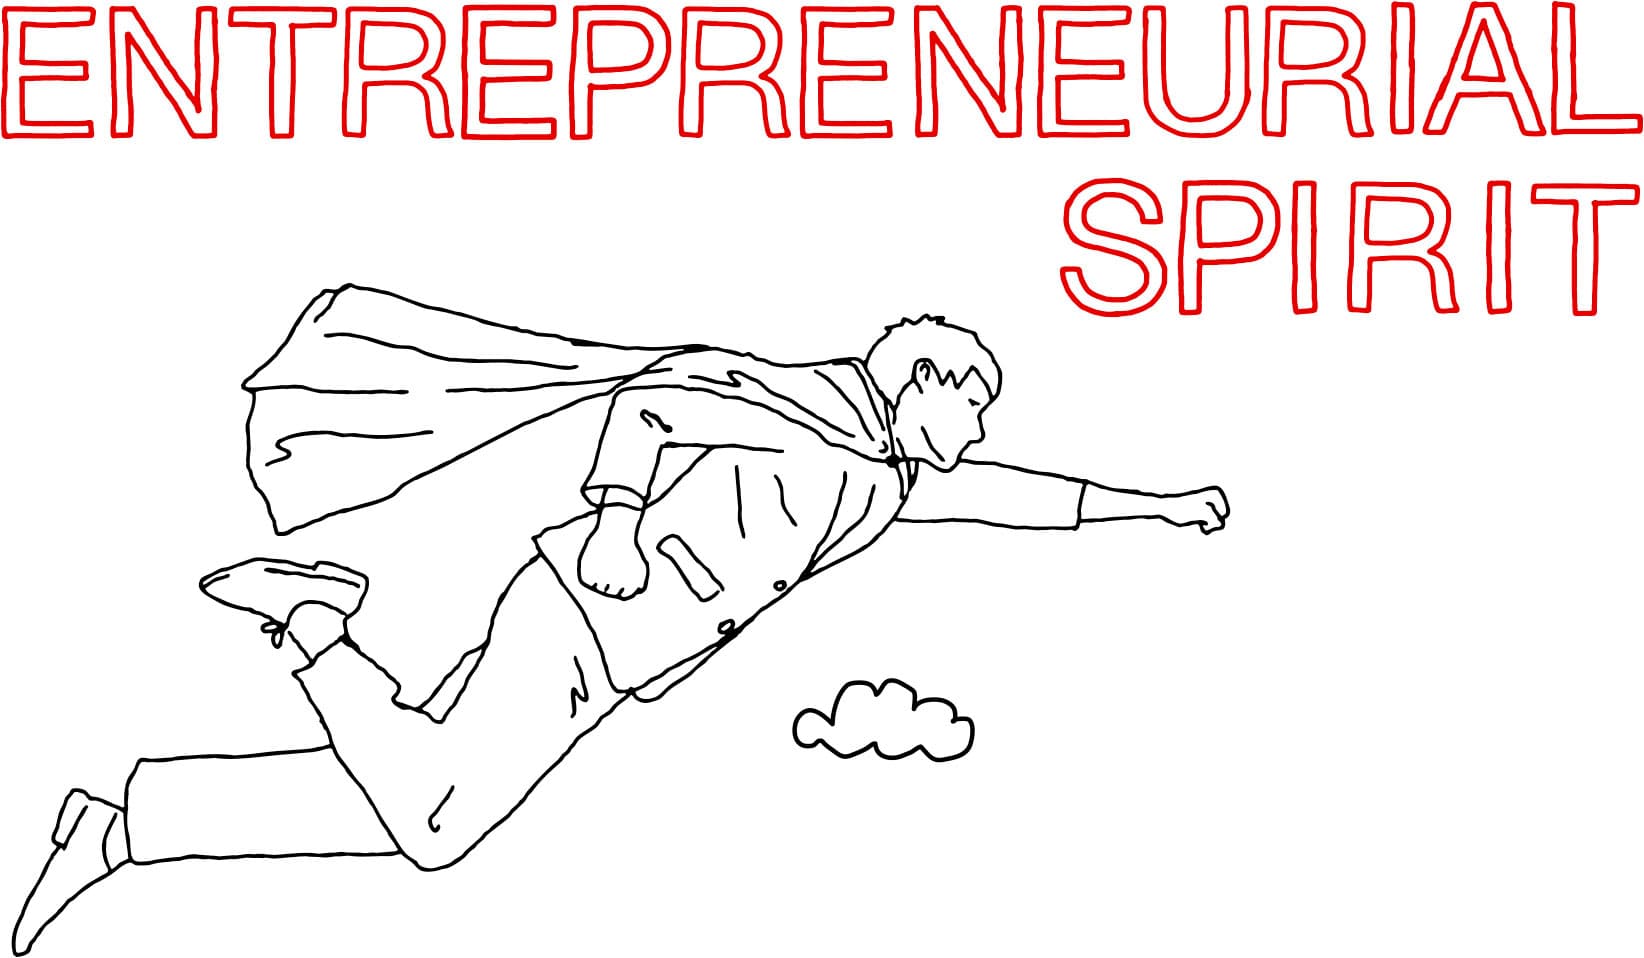 Entrepreneurial spirit